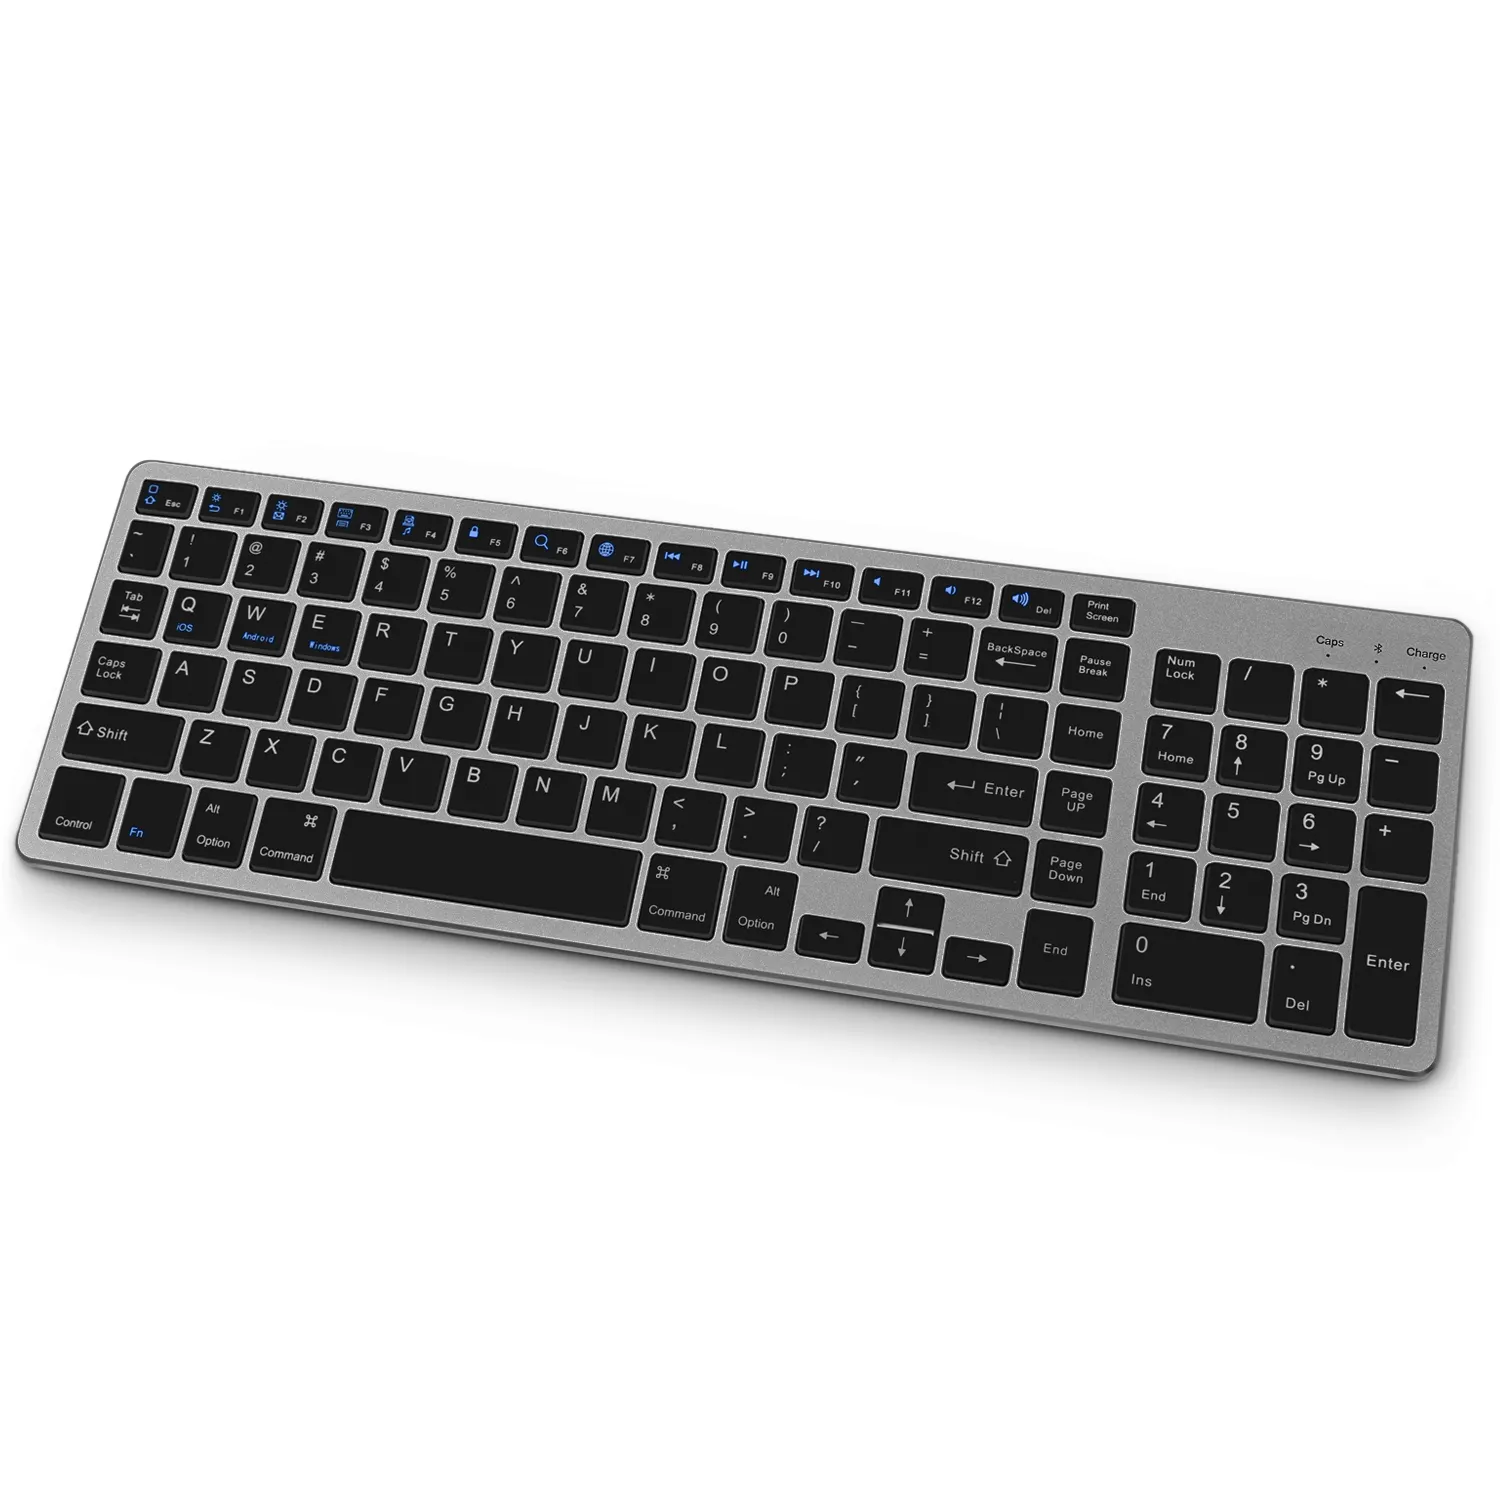 Best Seller Rechargeable 2.4G Wireless Keyboard Portable Mini Wireless Keyboard Rechargeable for PC Laptop Desktop